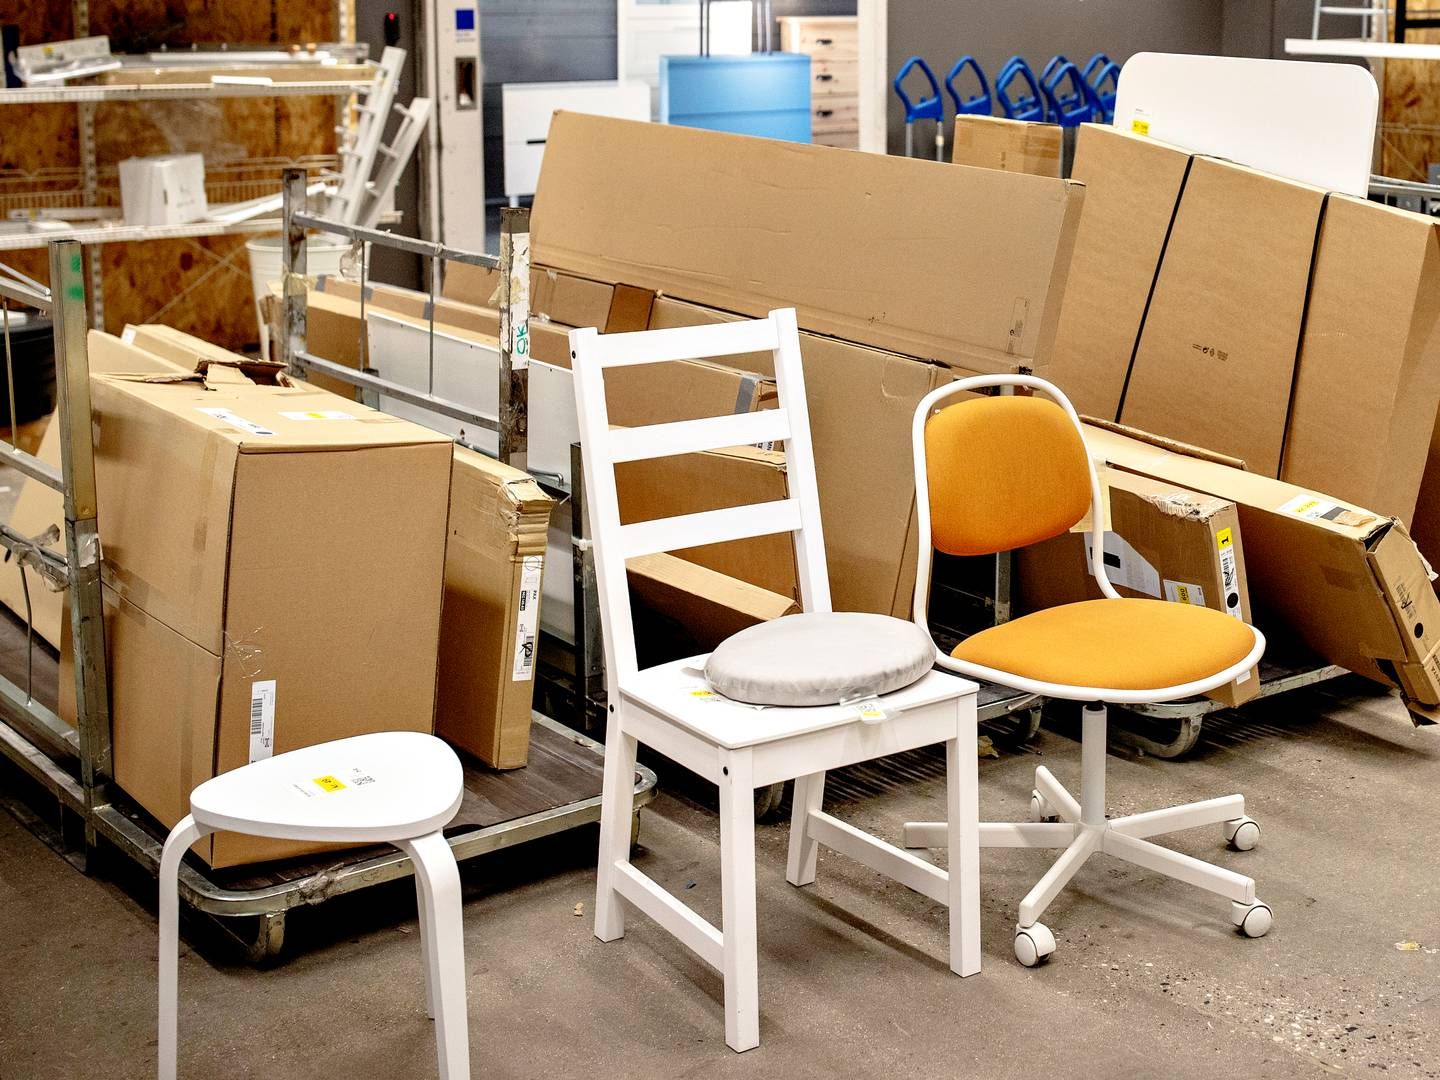 Hvor mange Ikea-møbler kan egentlig genbruges? Det vil Vestforbrænding og Ikea i samarbejde prøve at undersøge. | Foto: Miriam Dalsgaard